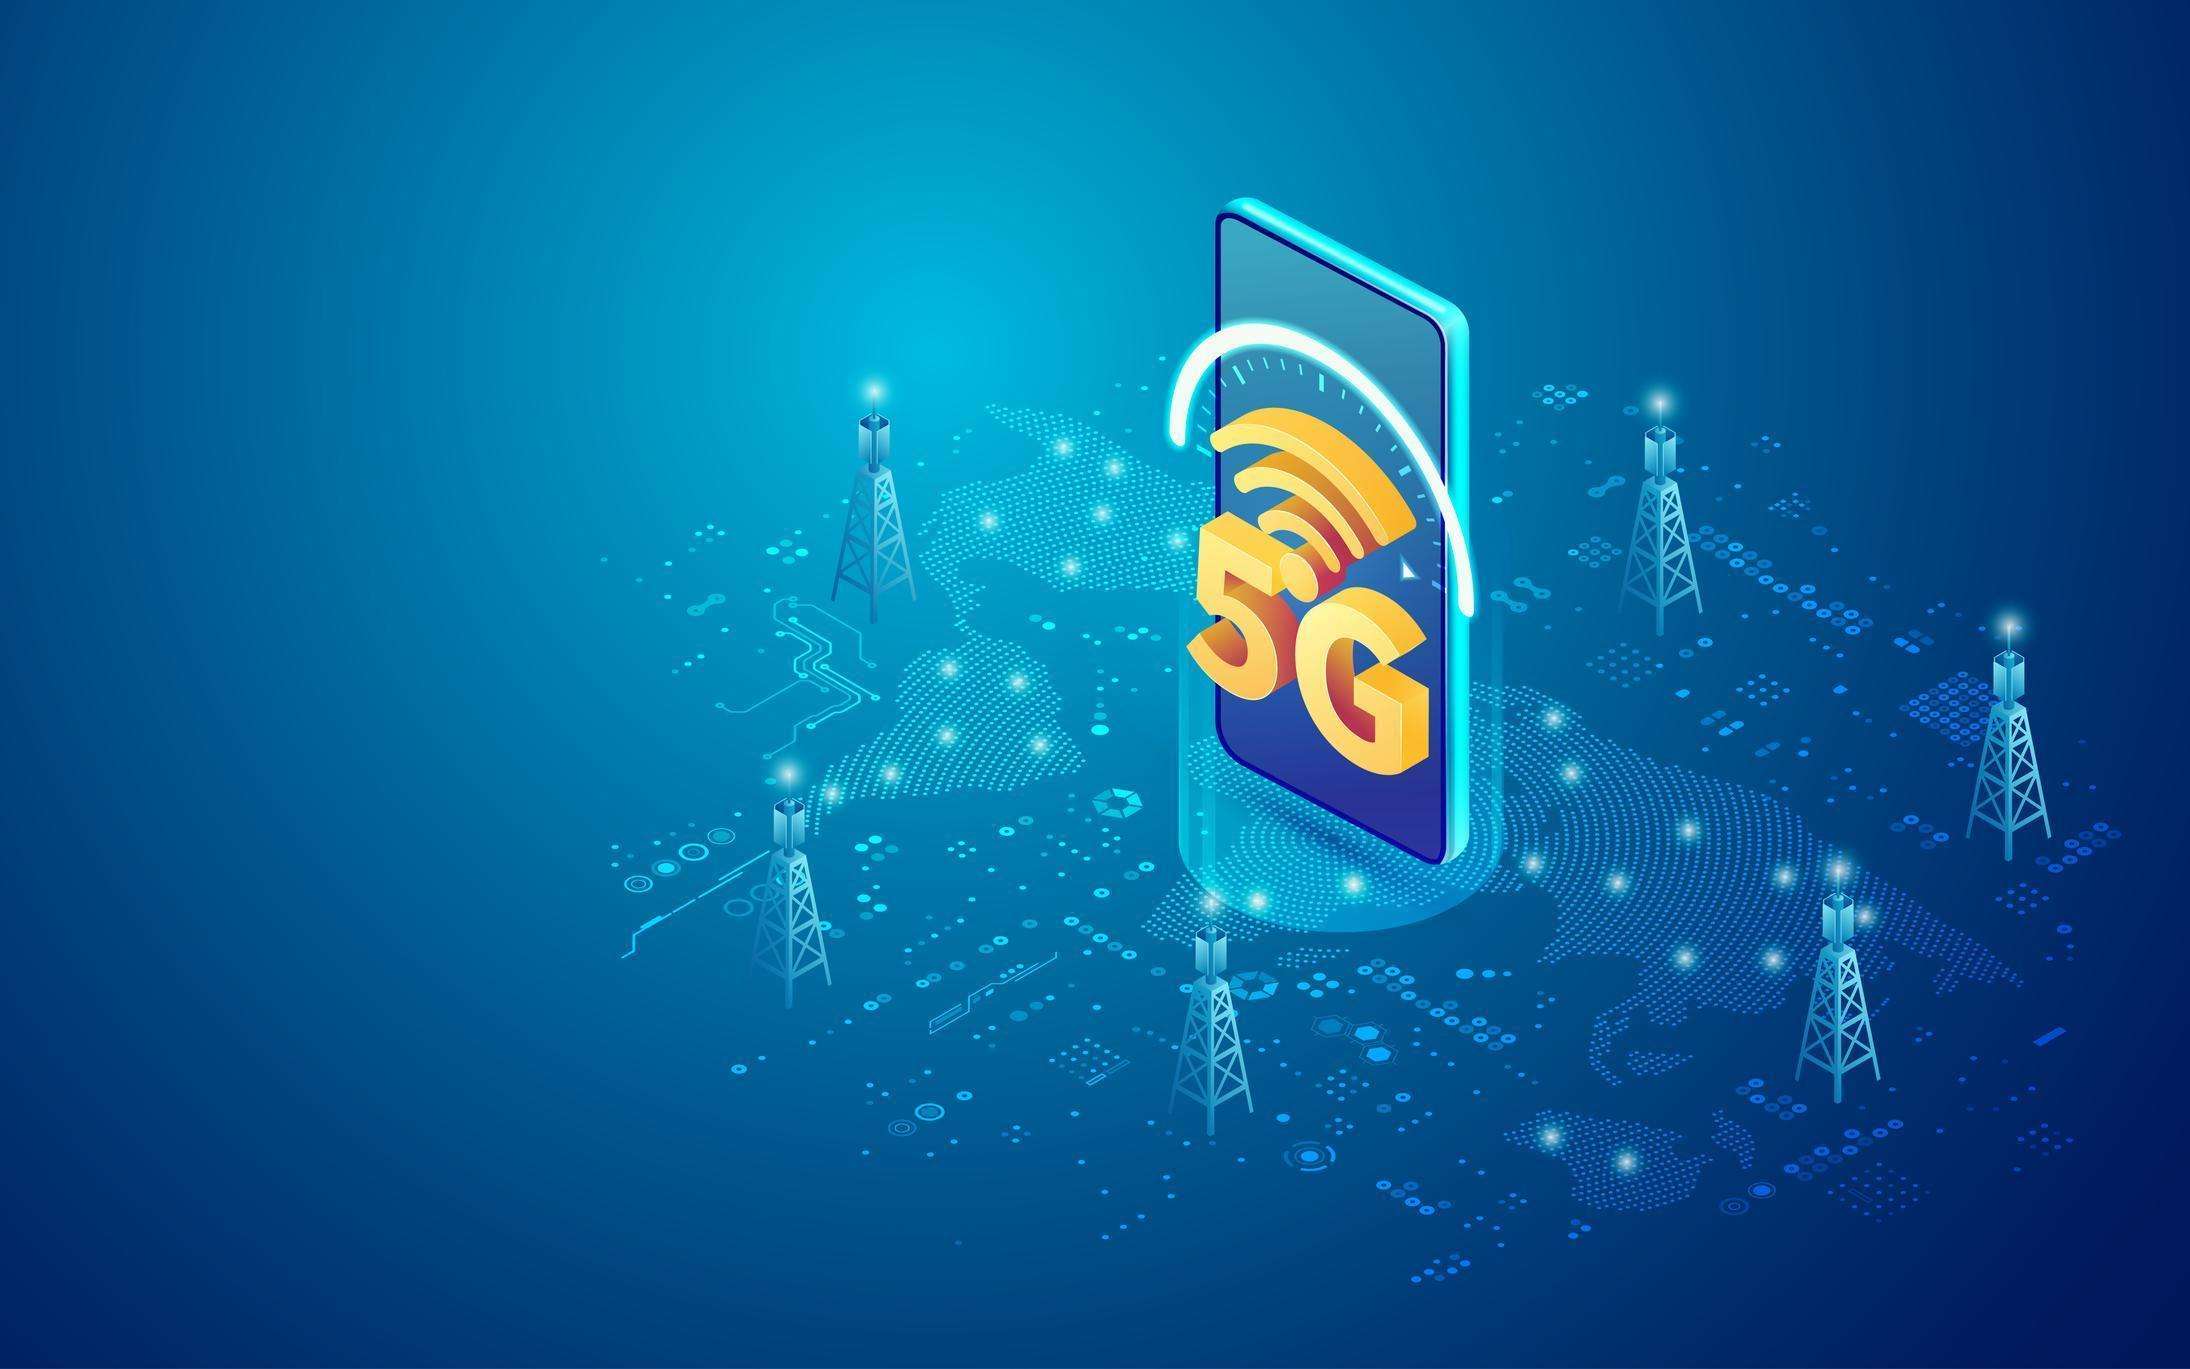 वैश्विक 5G कनेक्शन 2025 तक 2.1 बिलियन से अधिक हो जाएंगे: बैन एंड कंपनी